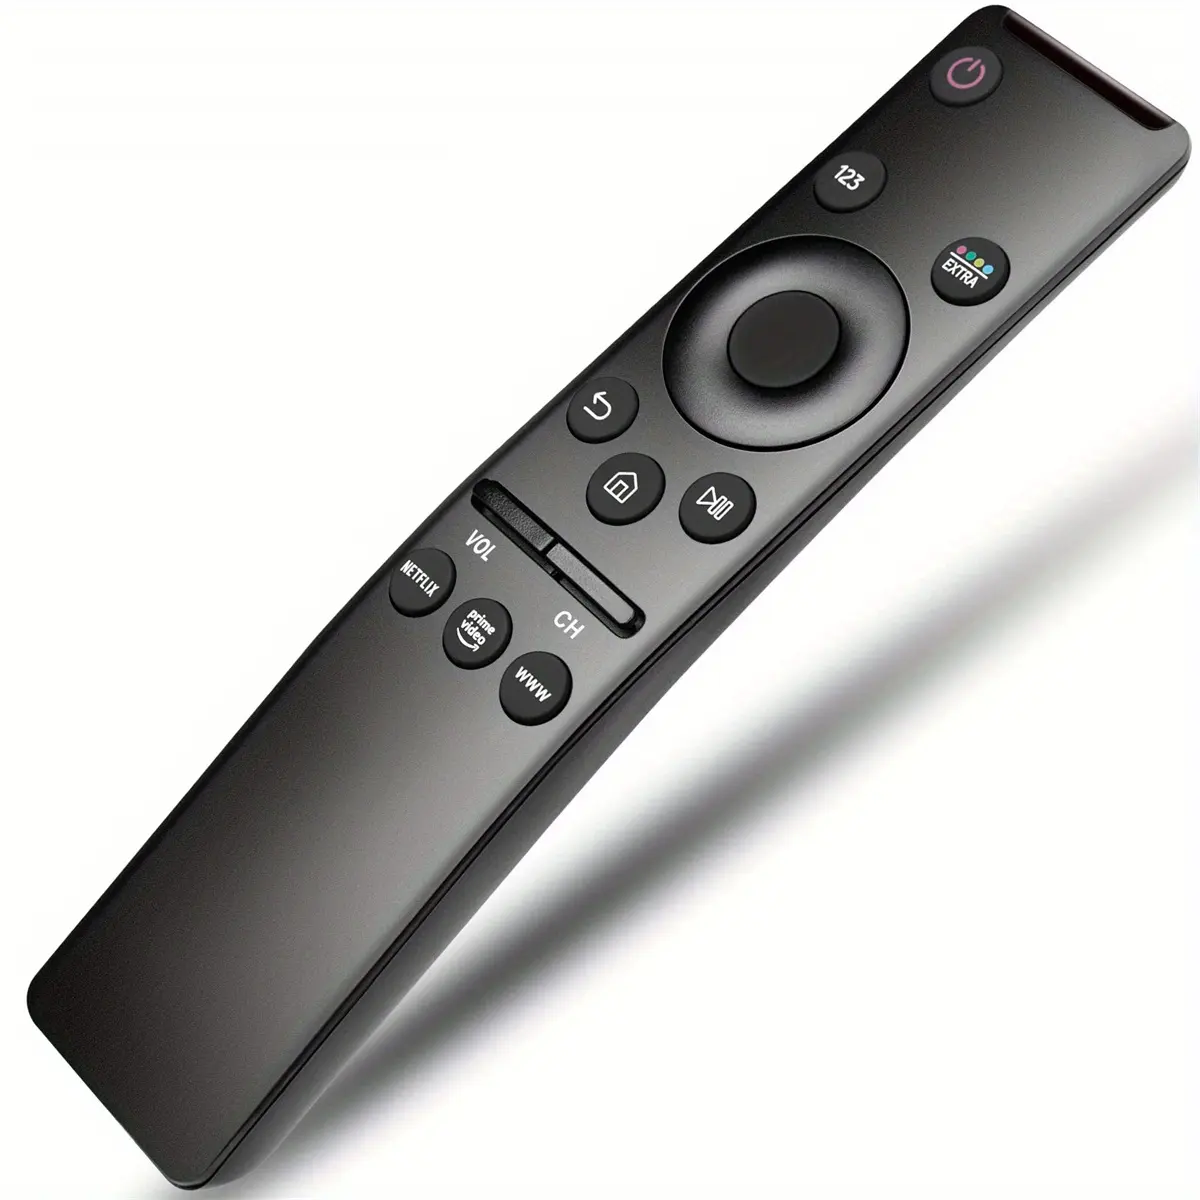 รีโมทคอนโทรลแบบสากลสำหรับทีวีซัมซุงทุกเครื่อง HDTV แบบโค้ง4K 8K 3D สมาร์ททีวีพร้อมปุ่มสำหรับ Netflix Prime Video WWW